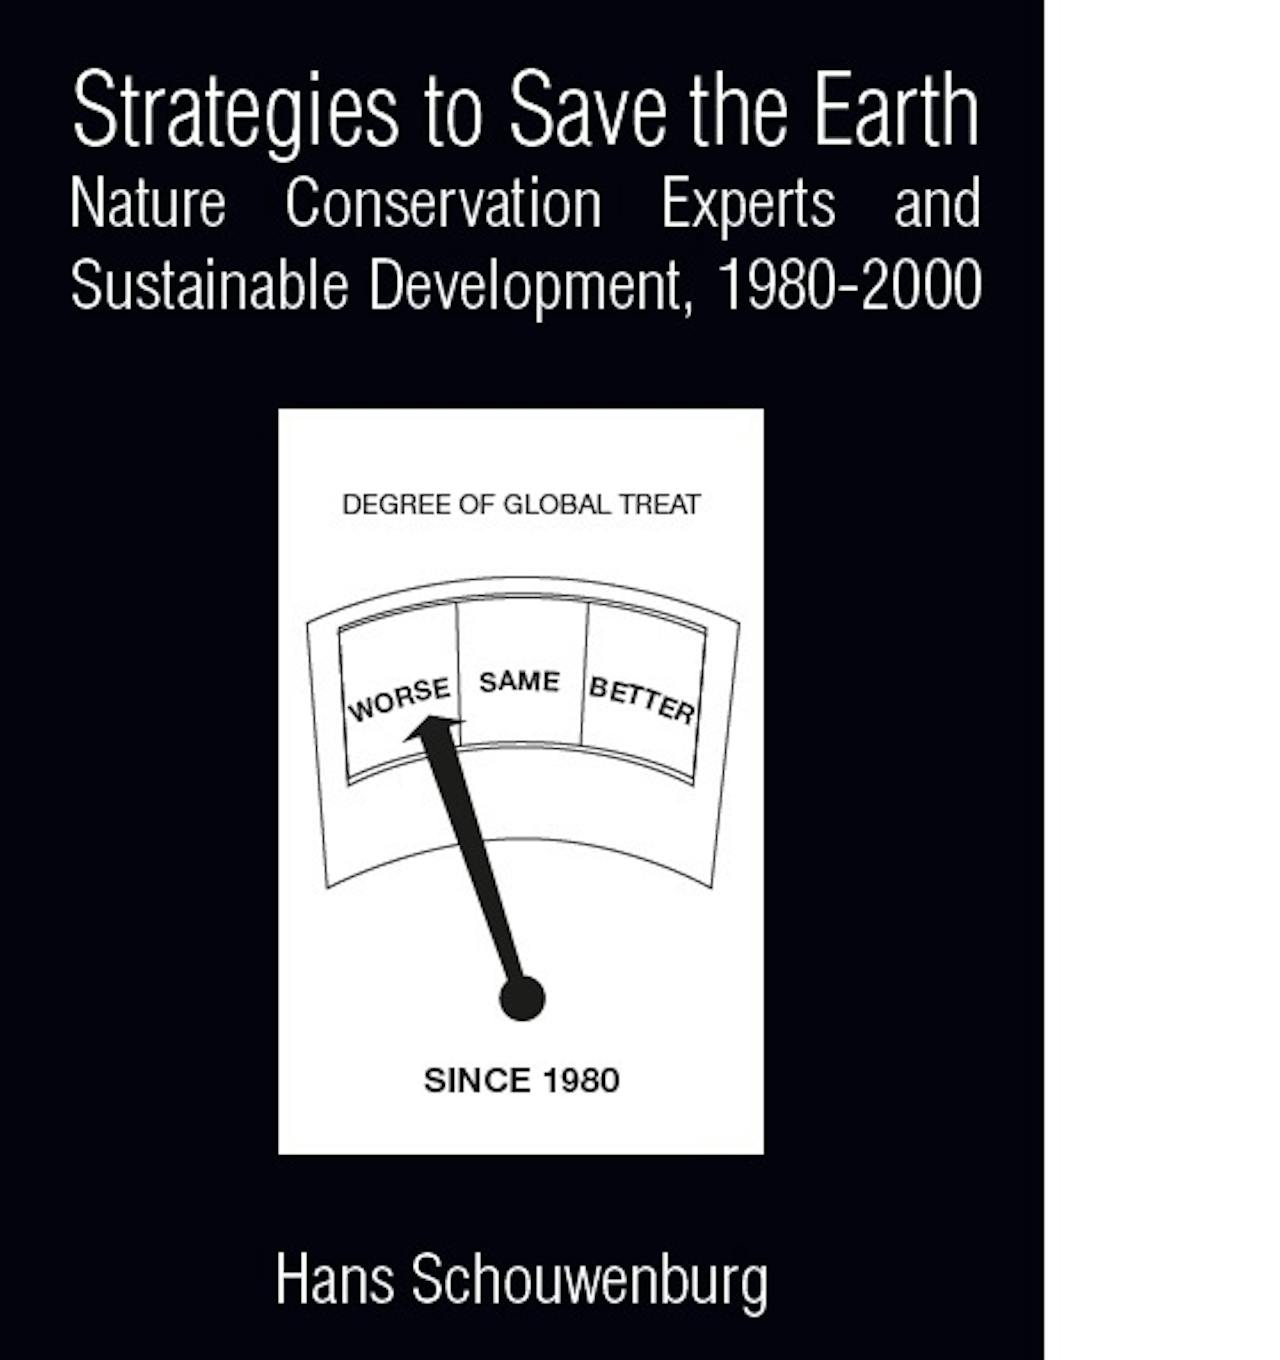 Cover van het proefschrift van Hans Schouwenburg. Er staat de volgende tekst: Strategieën om de aarde te redden. Deskundigen op het gebied van natuurbehoud en duurzame ontwikkeling.